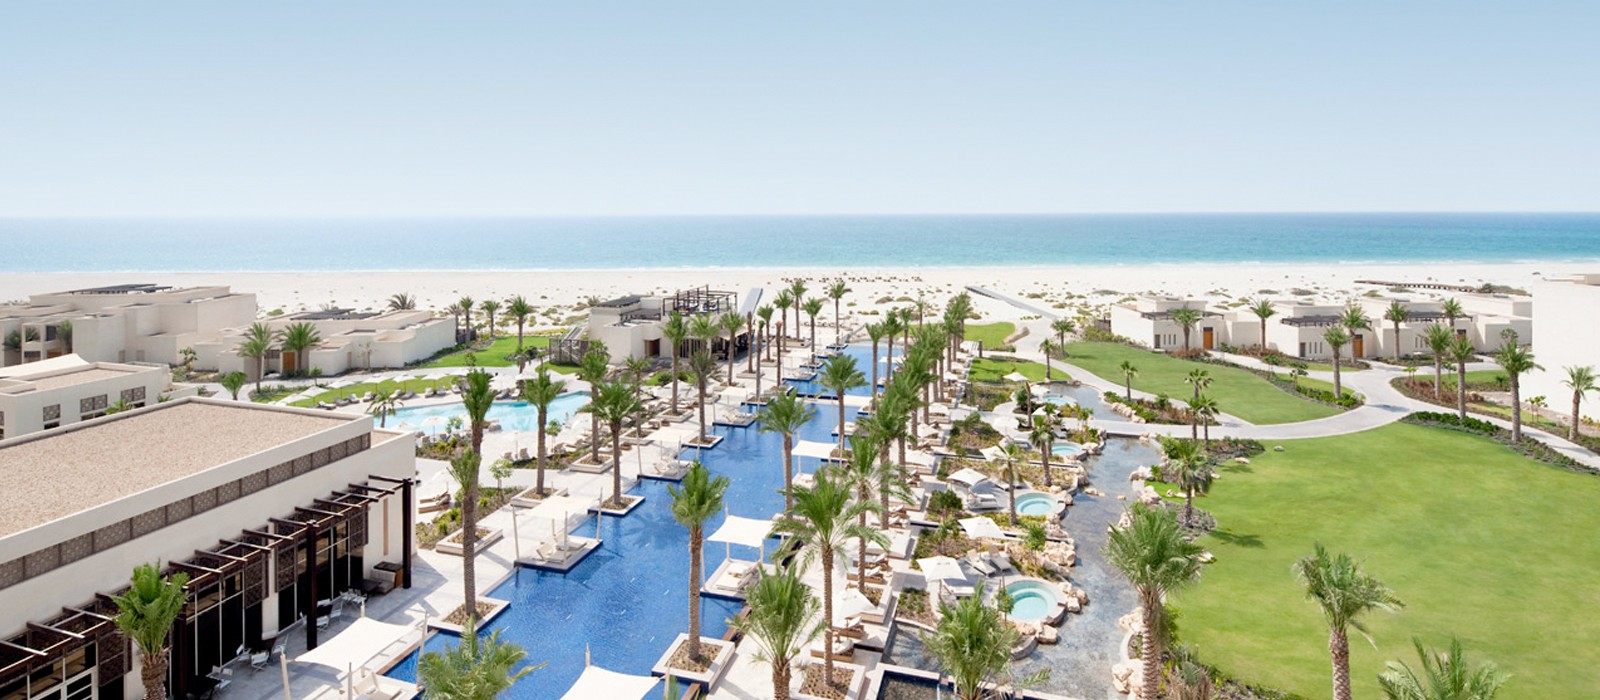 Abu Dhabi Honeymoons - Park Hyatt Abu Dhabi - Header